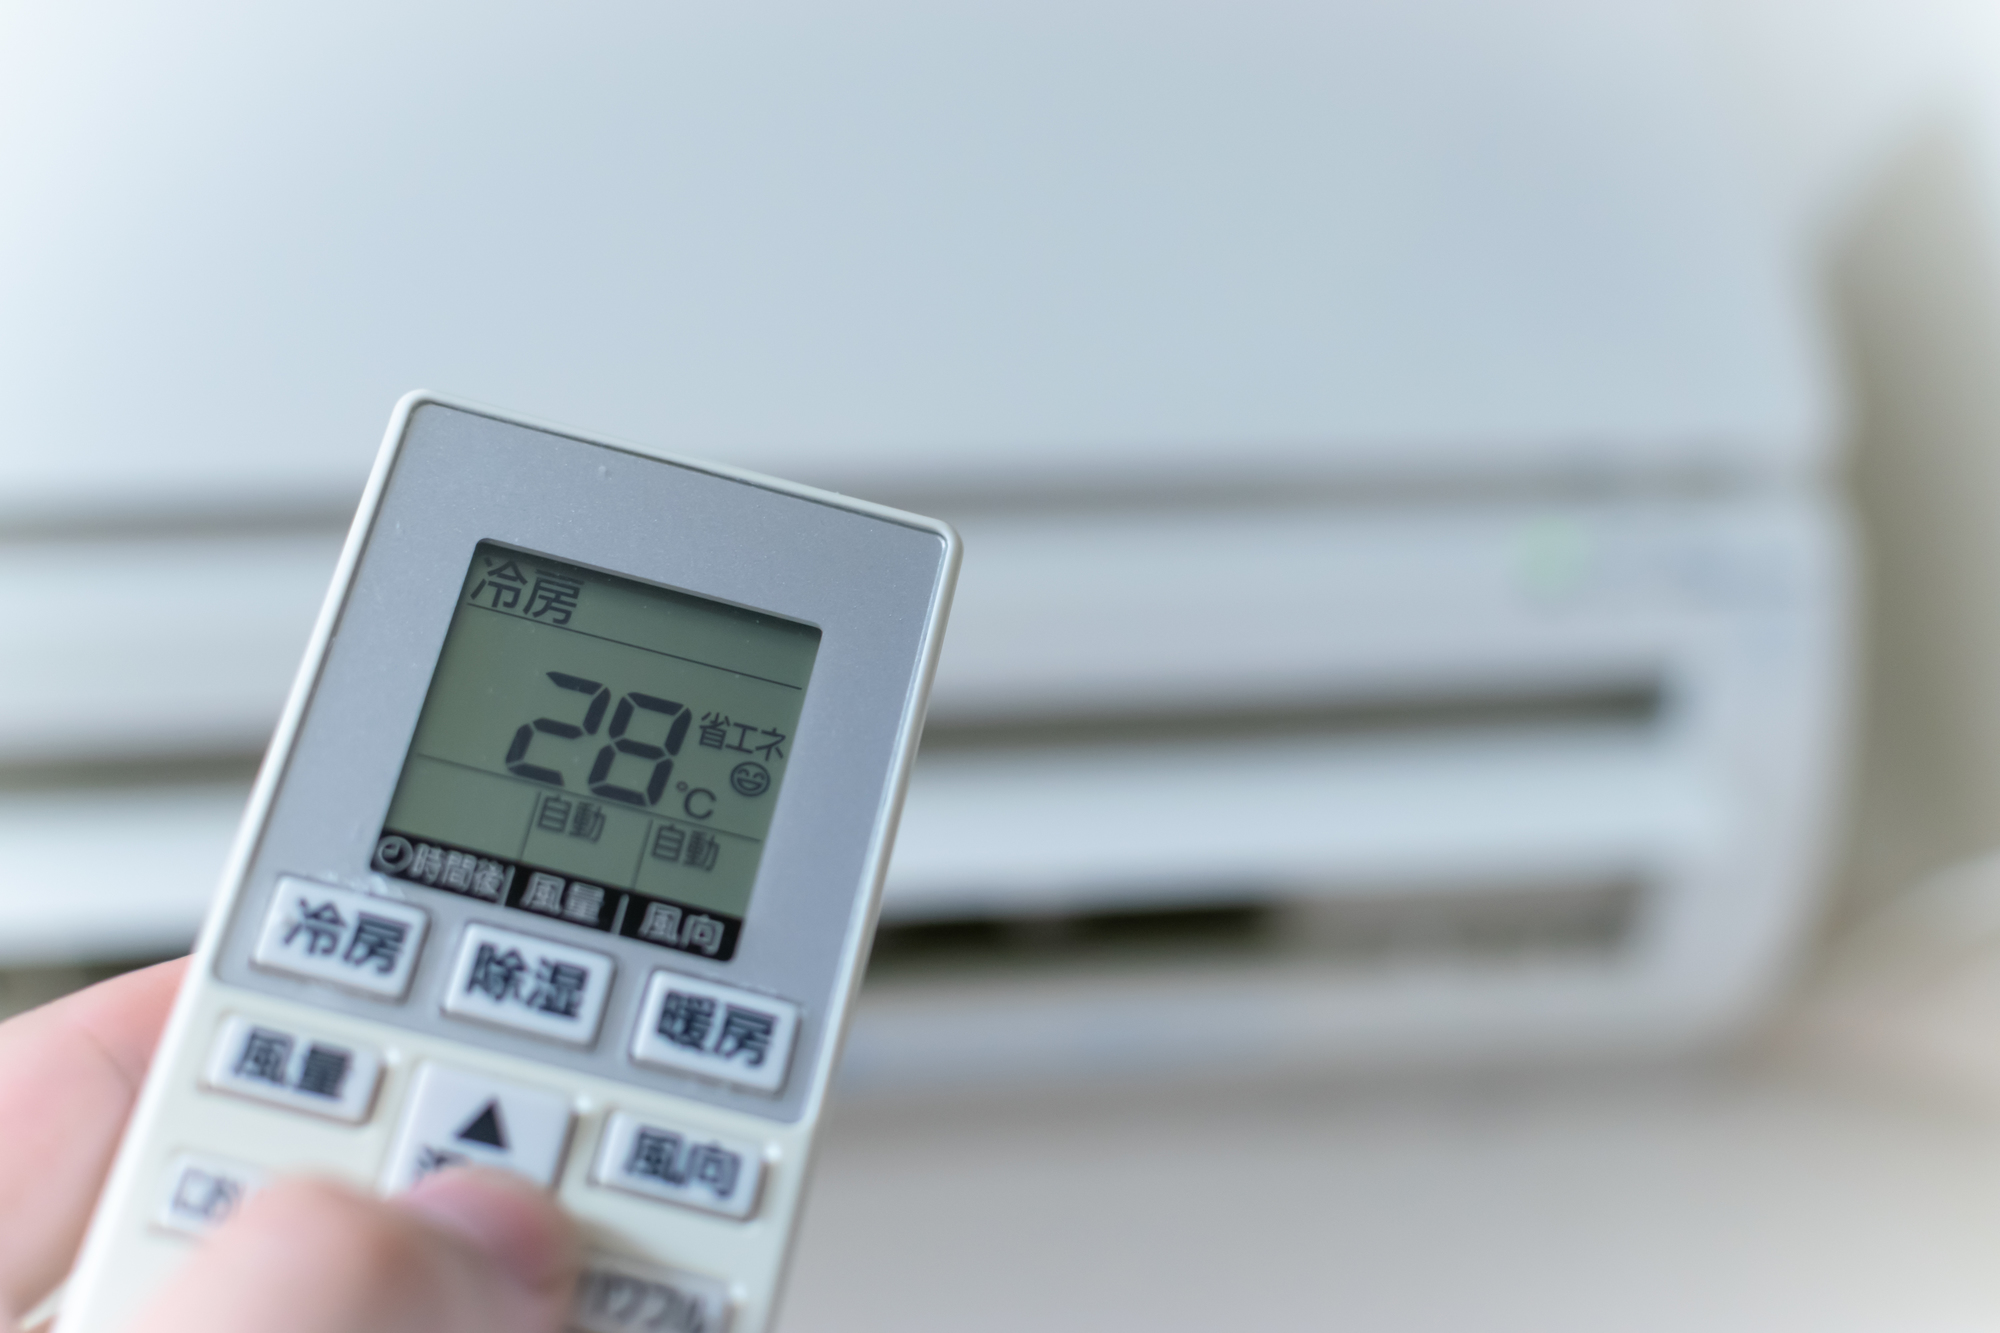 エアコン冷房の設定温度が高めでも涼しく過ごせる方法が知りたい 室温28度でも快適に過ごすには 電力 ガス比較サイト エネチェンジ